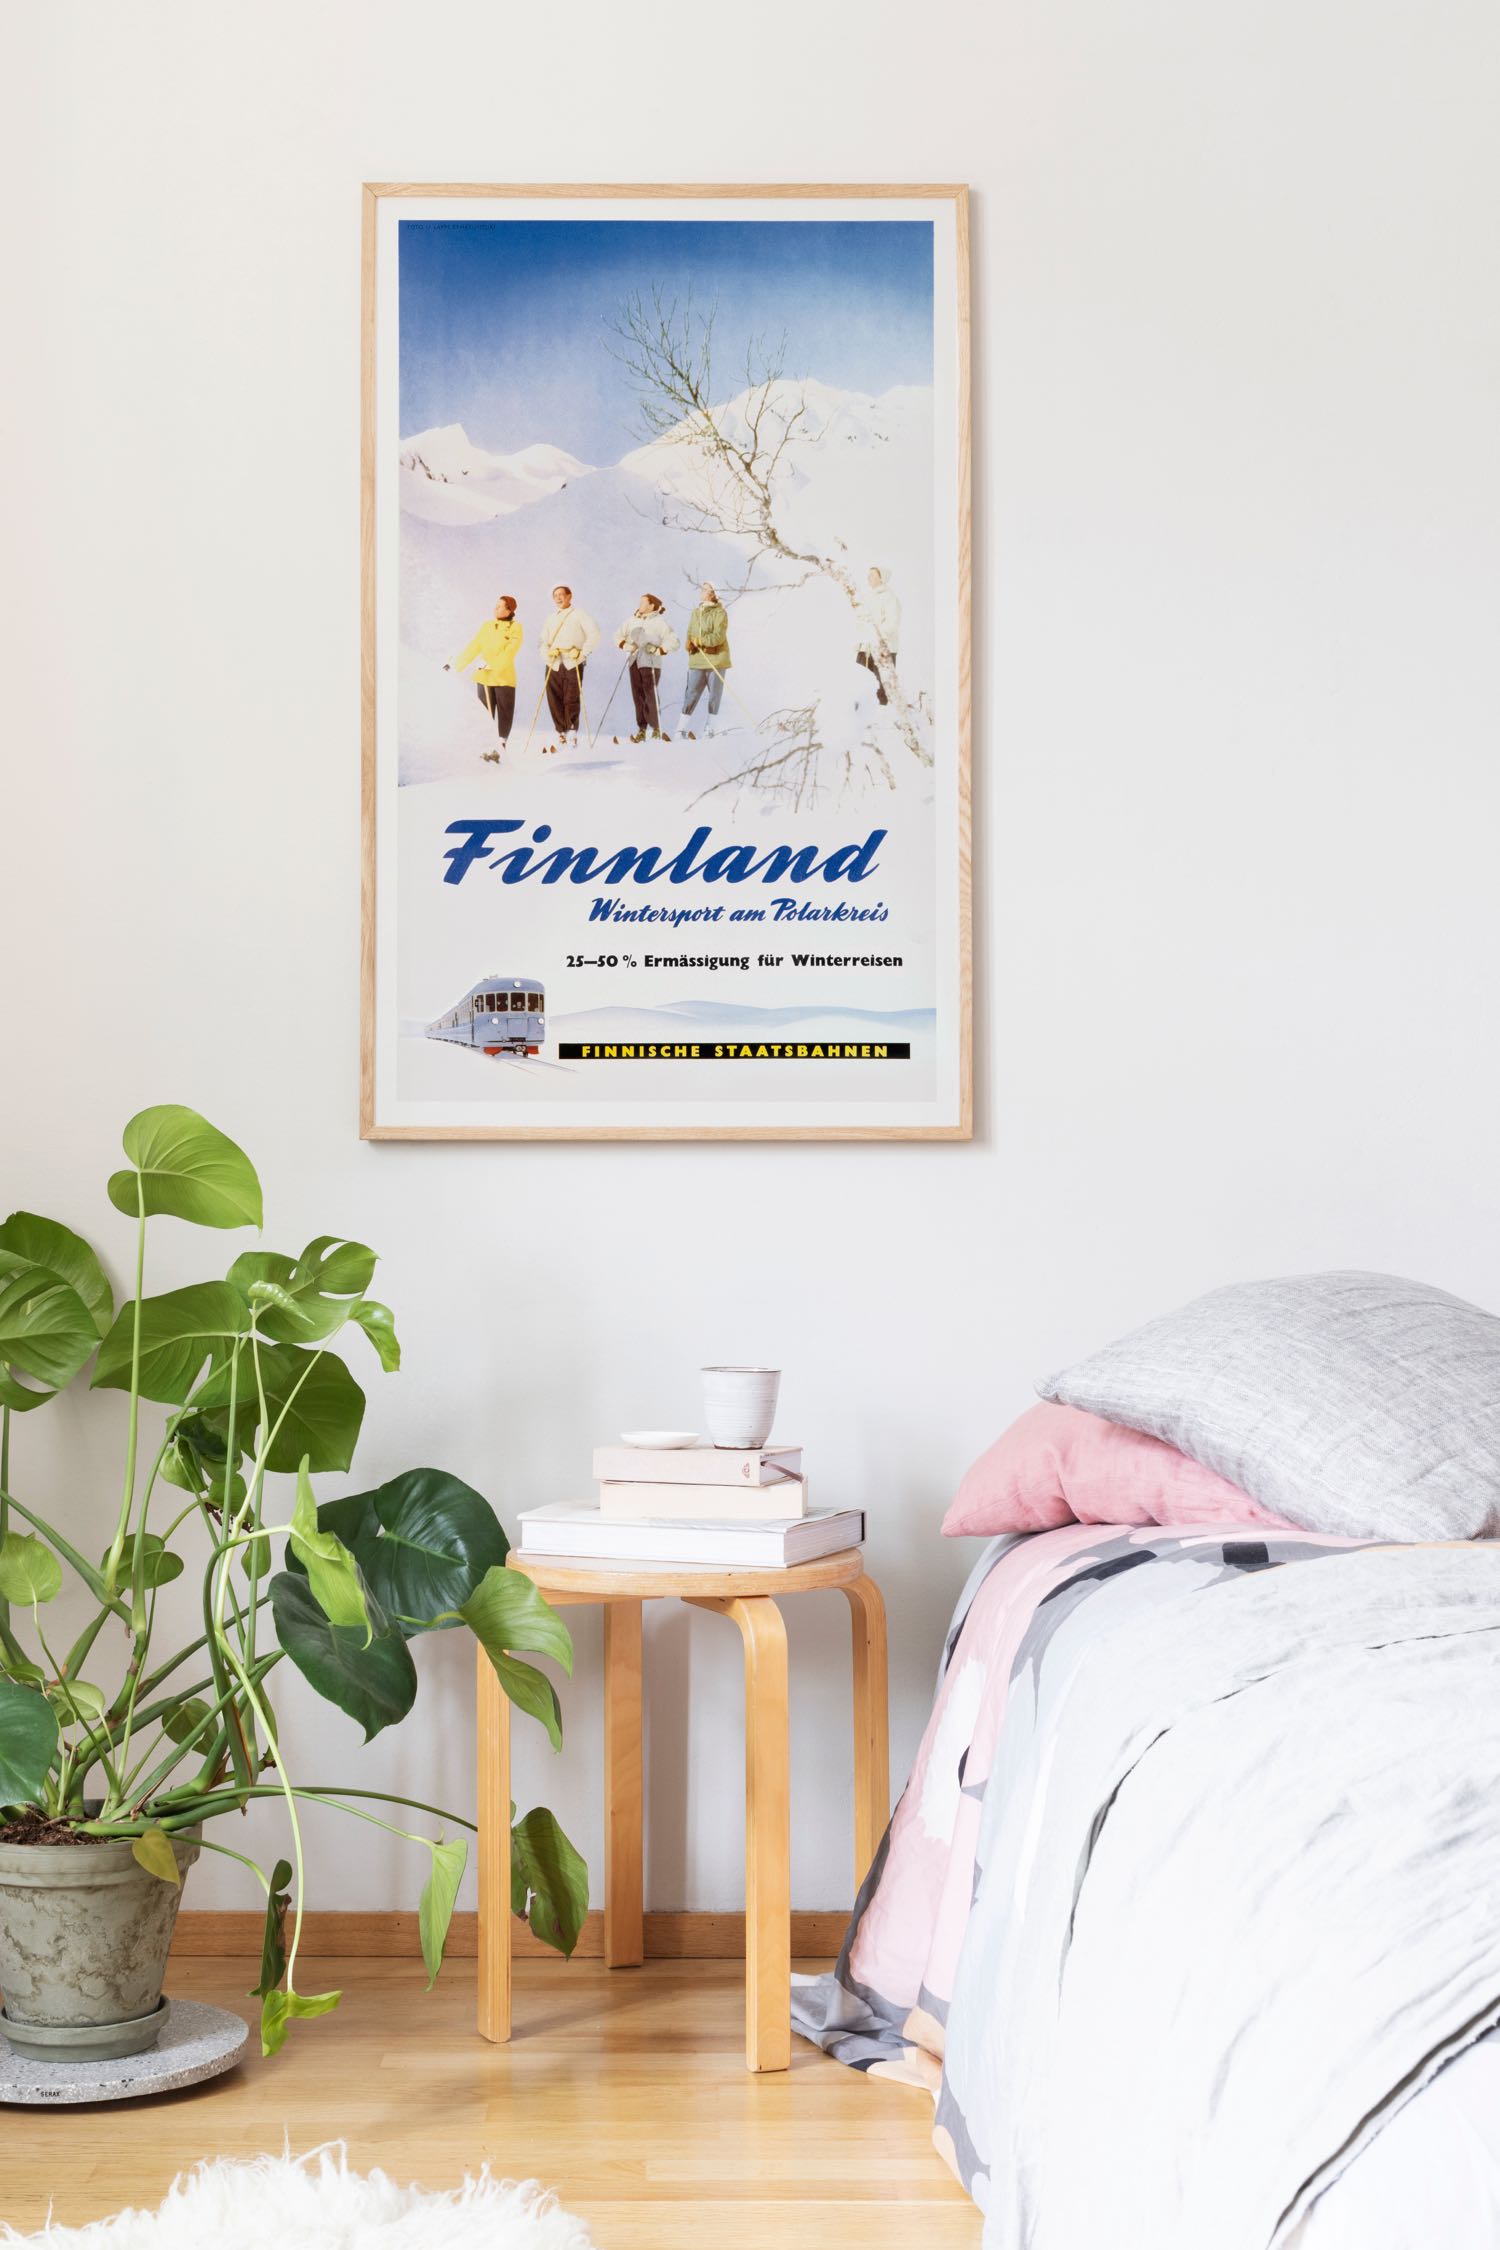 Inredningsbild föreställande vintage Finland affisch med temat “Pyhätunturi”, i storlek 70x100 cm.